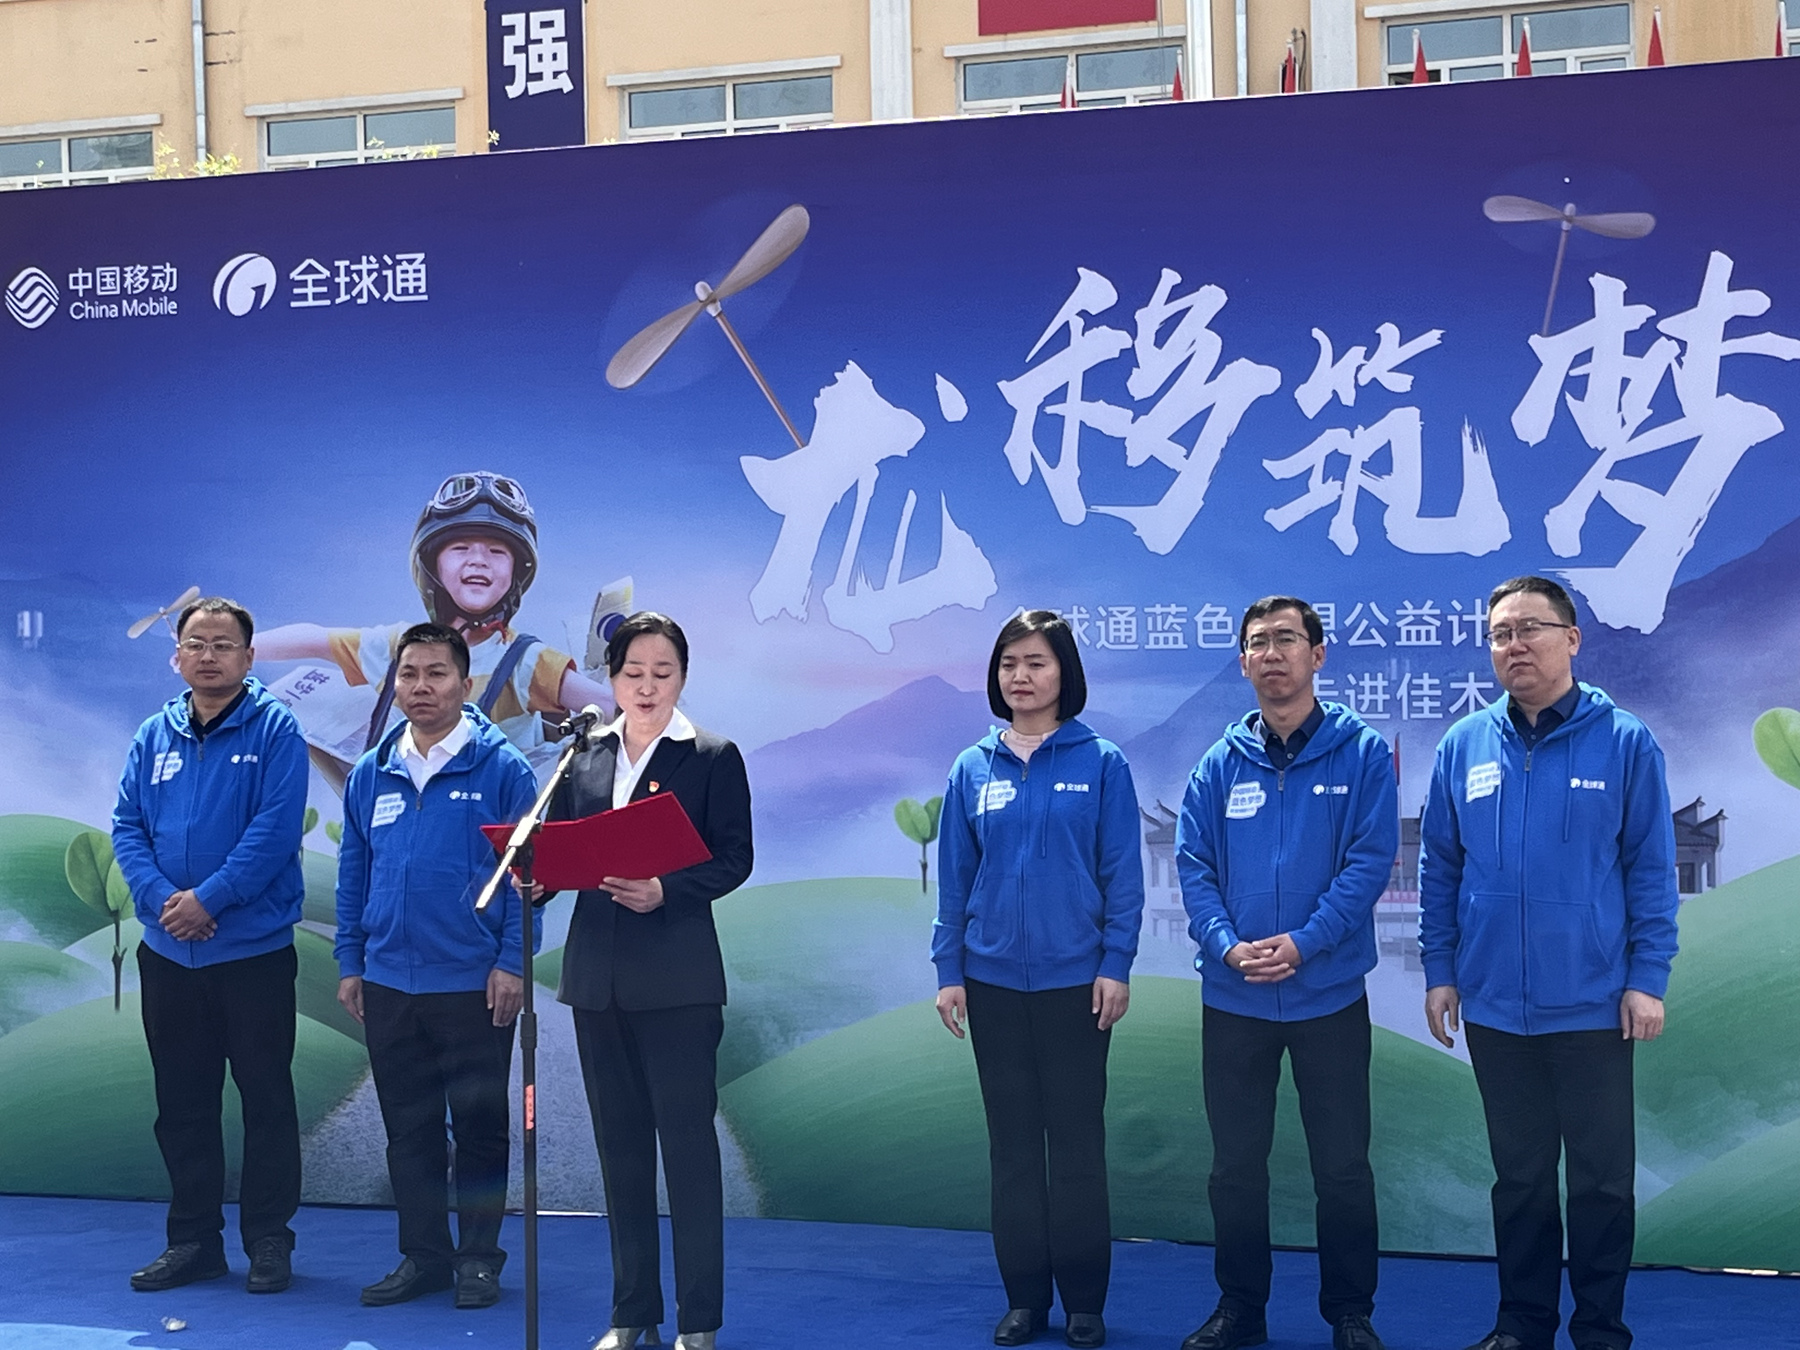 黑龙江省移动“全球通蓝色梦想公益计划”在行动